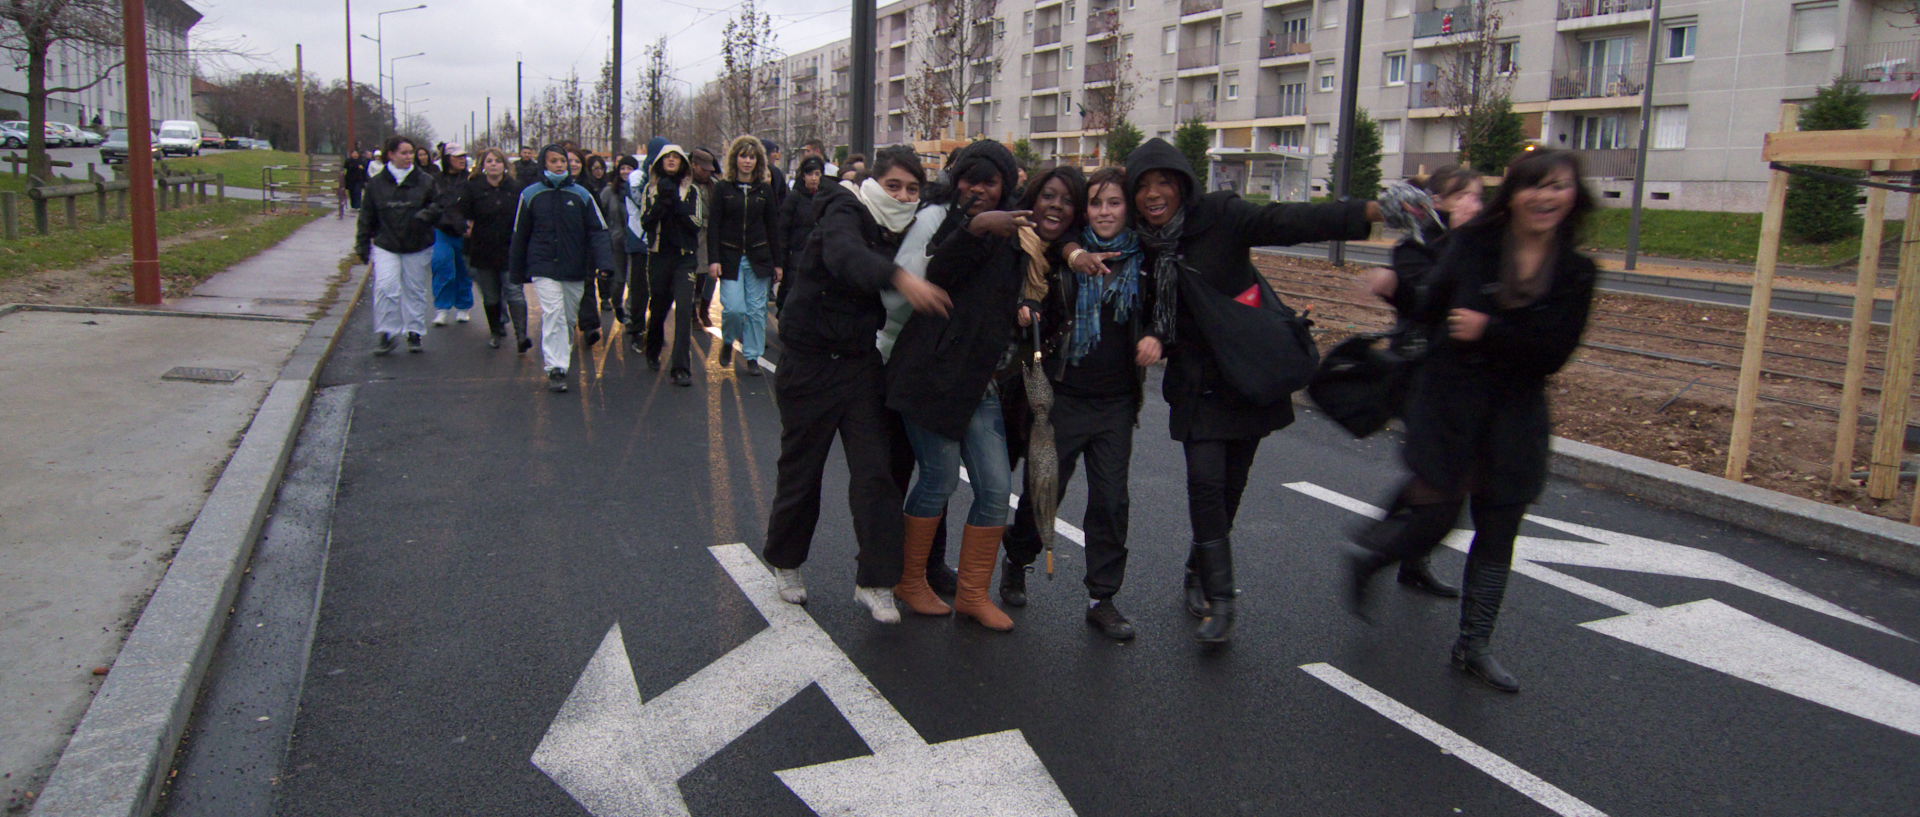 Jeudi 18 décembre 2008 (2), lycéens en partance pour une manifestation à Lyon, bd Ambroise-Croizat, à Vénissieux.